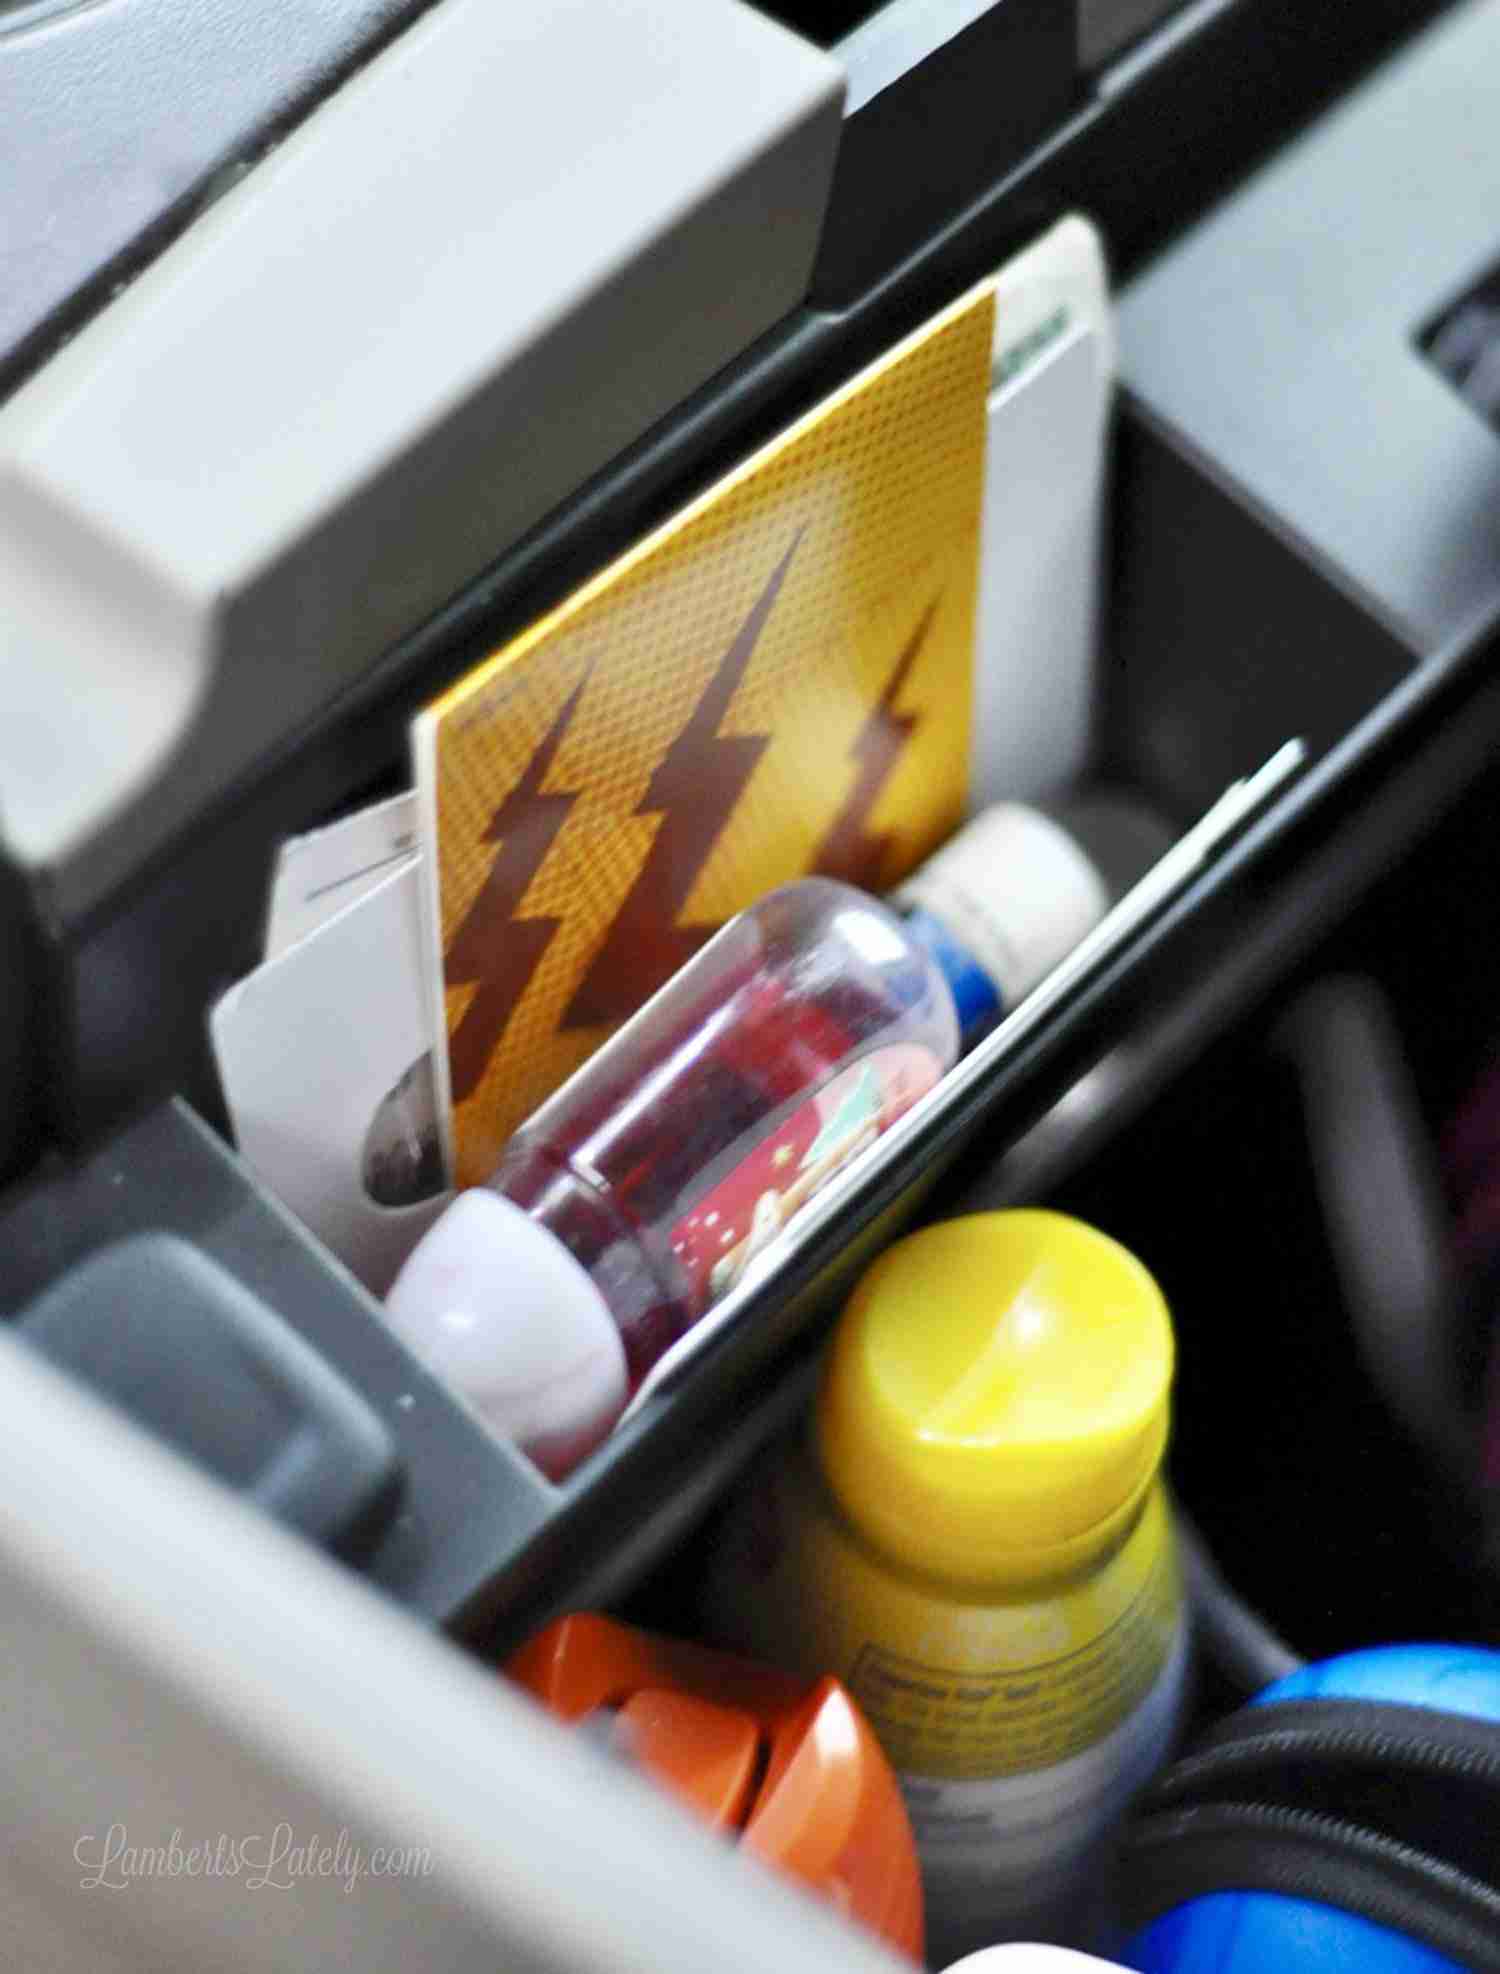 plastic organizer in a car center console.